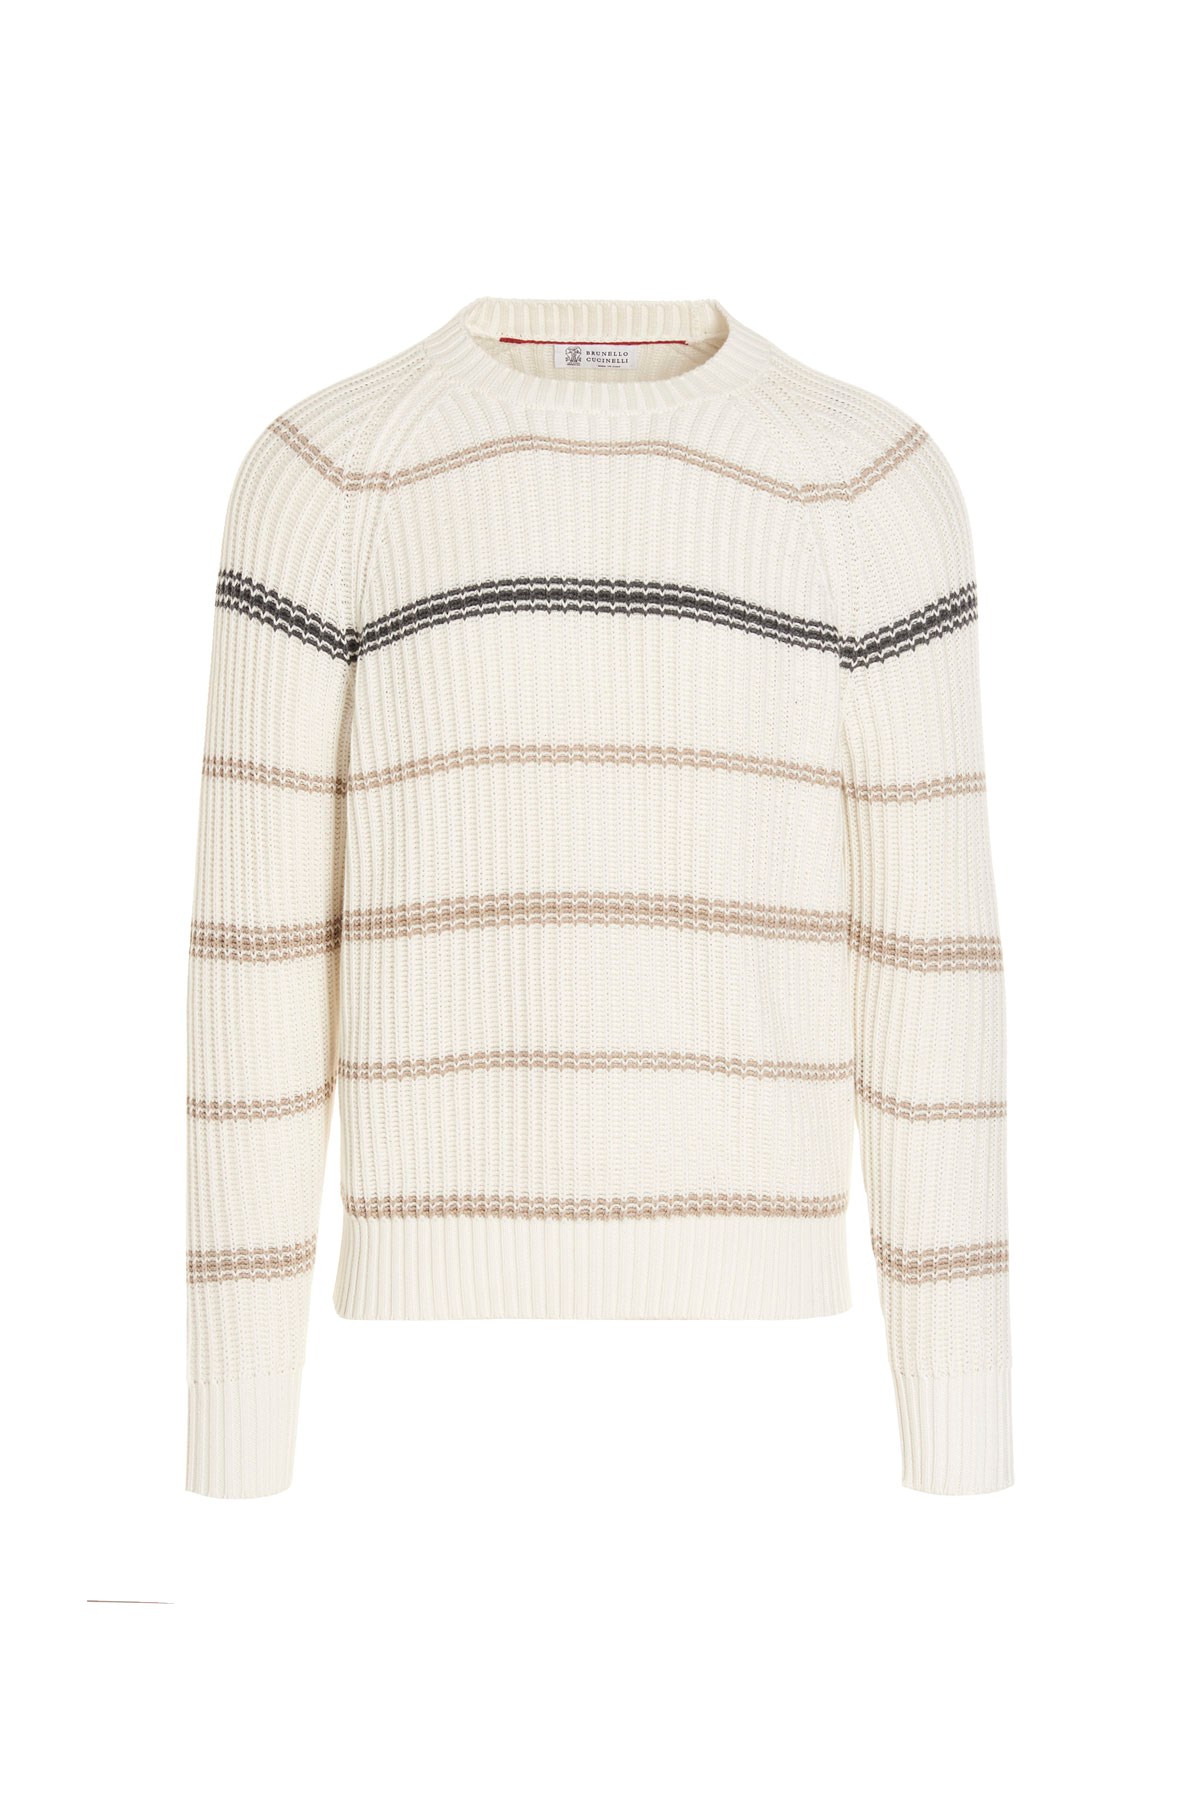 BRUNELLO CUCINELLI Striped Ribbed Sweater